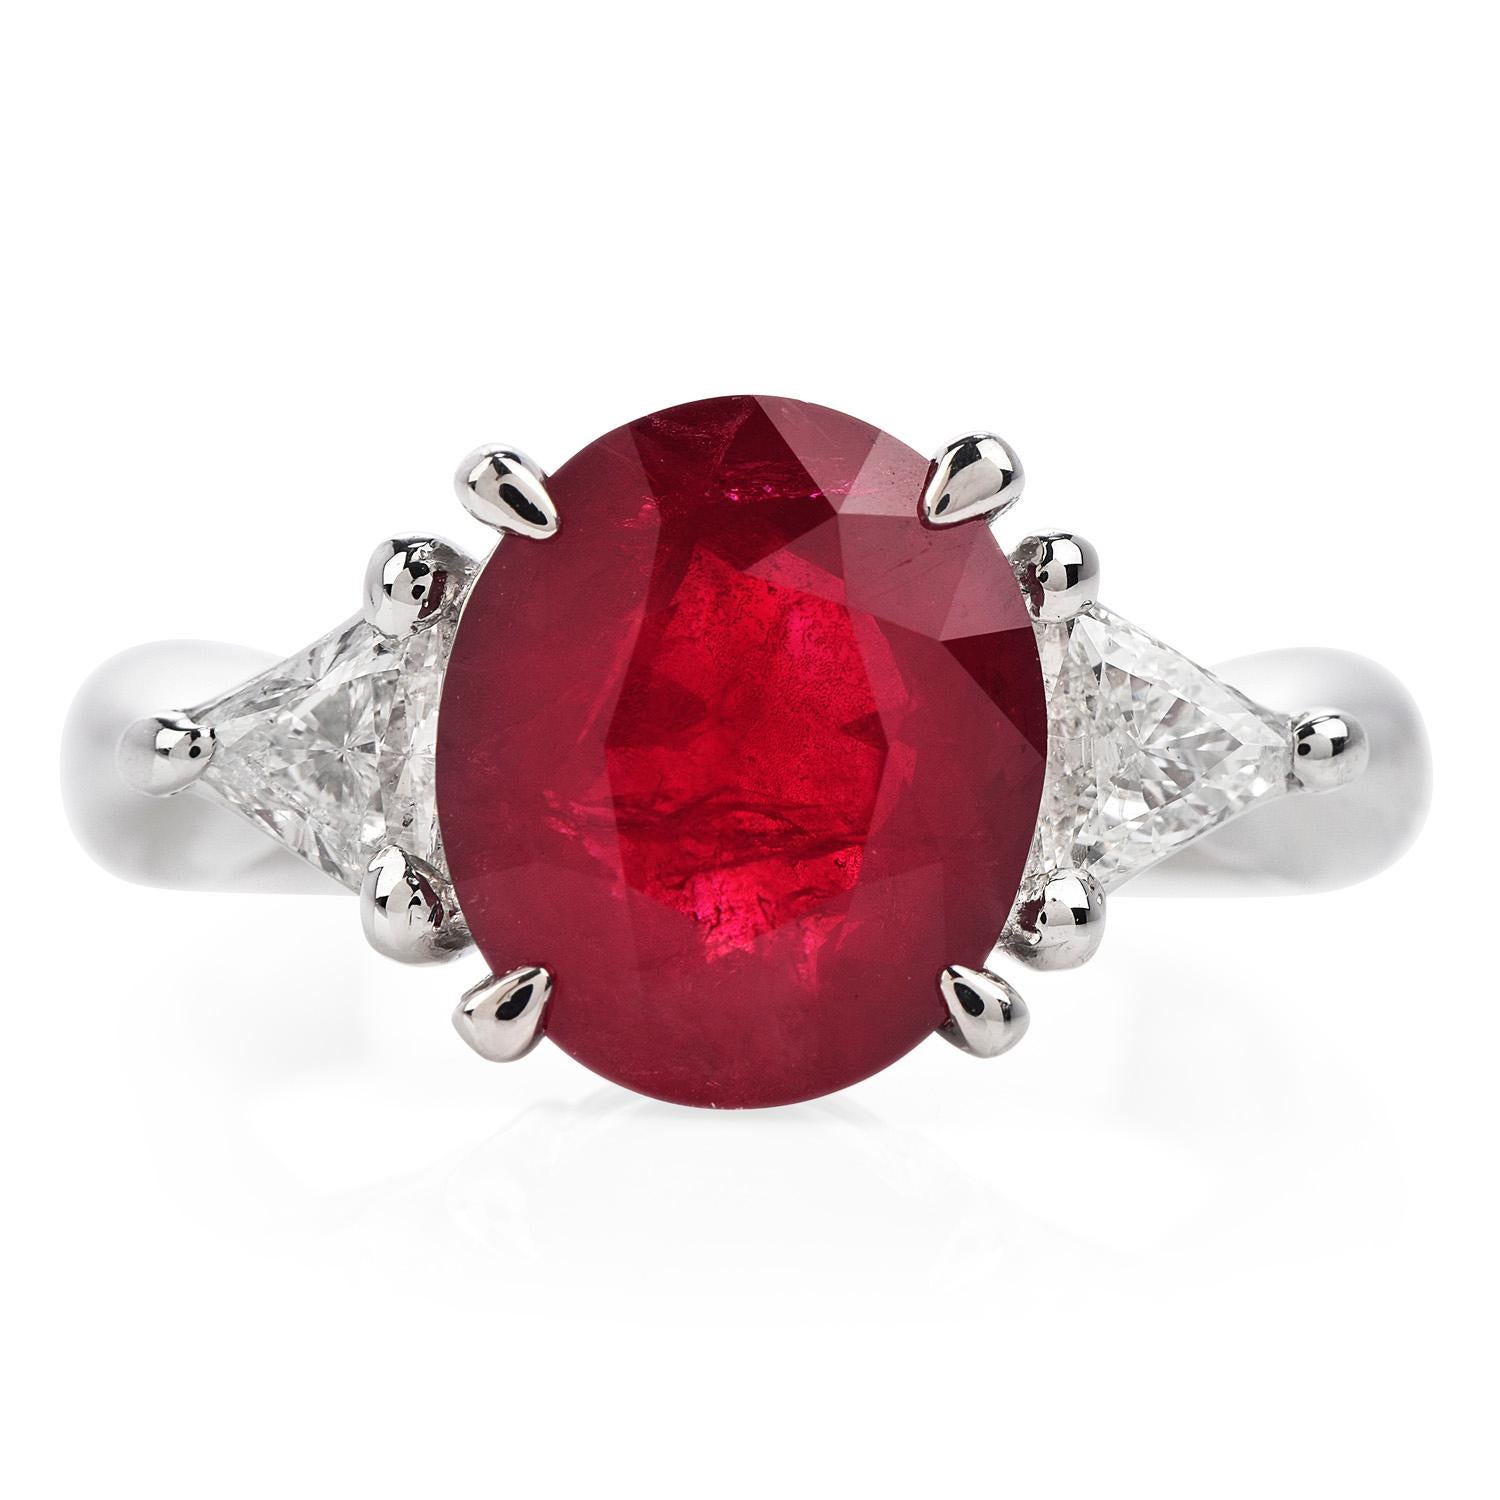 Dieser exquisite GIA-zertifizierte Rubin- und Diamantring mit drei Steinen ist das perfekte Geschenk für einen besonderen Anlass und der Geburtsstein des Juli

Der exquisite Mittelstein ist sorgfältig in eine massive Platinfassung